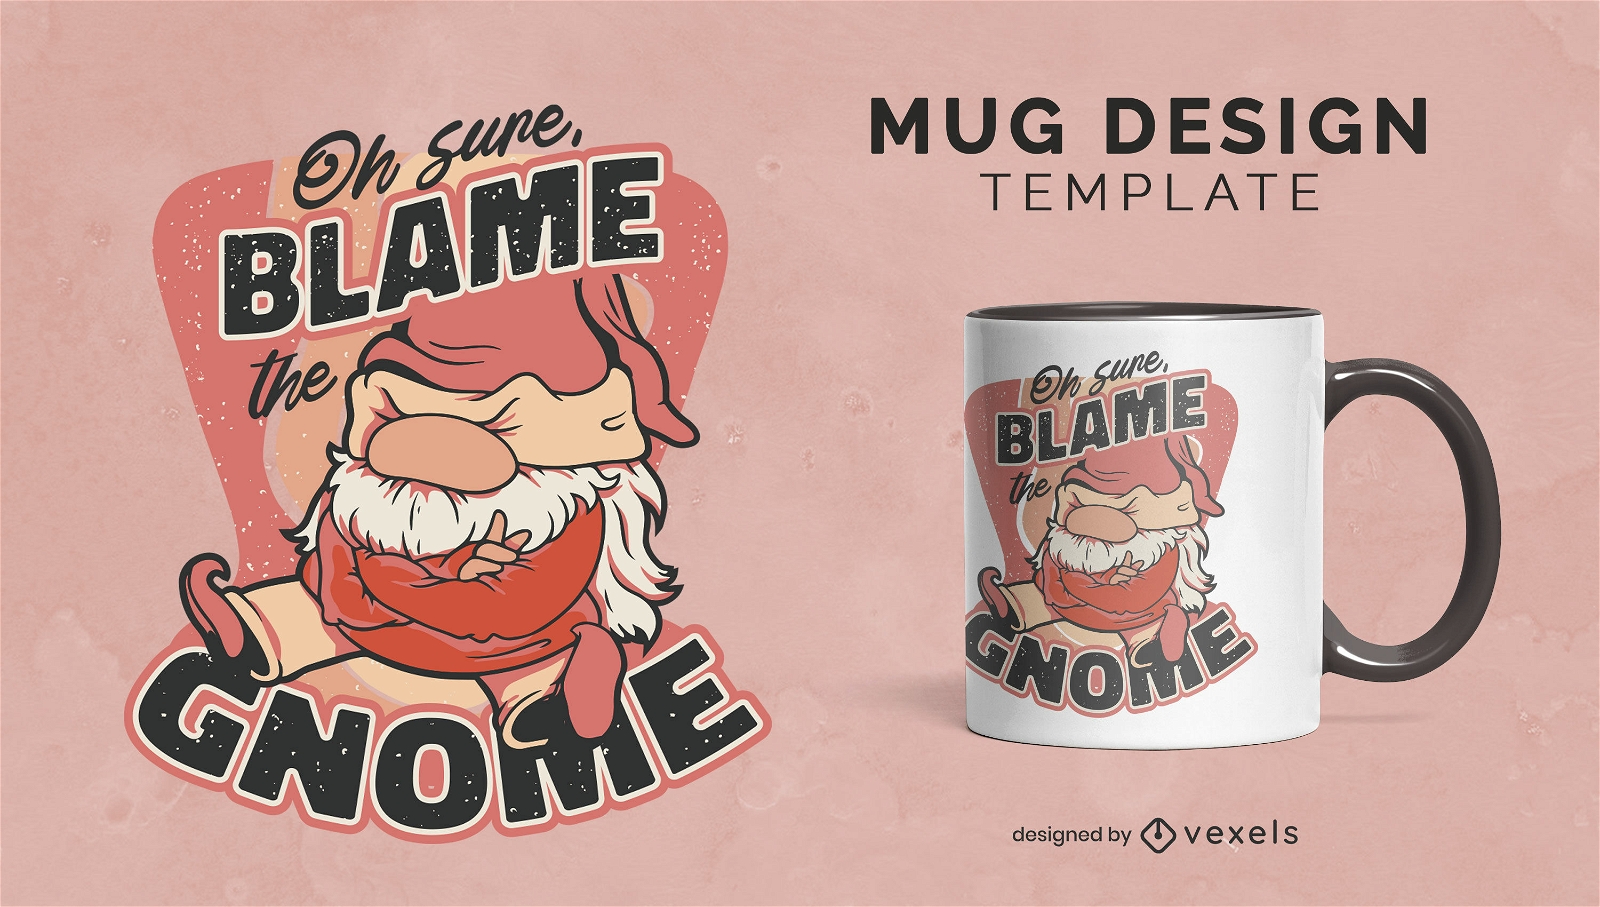 Blame the gnome mug design